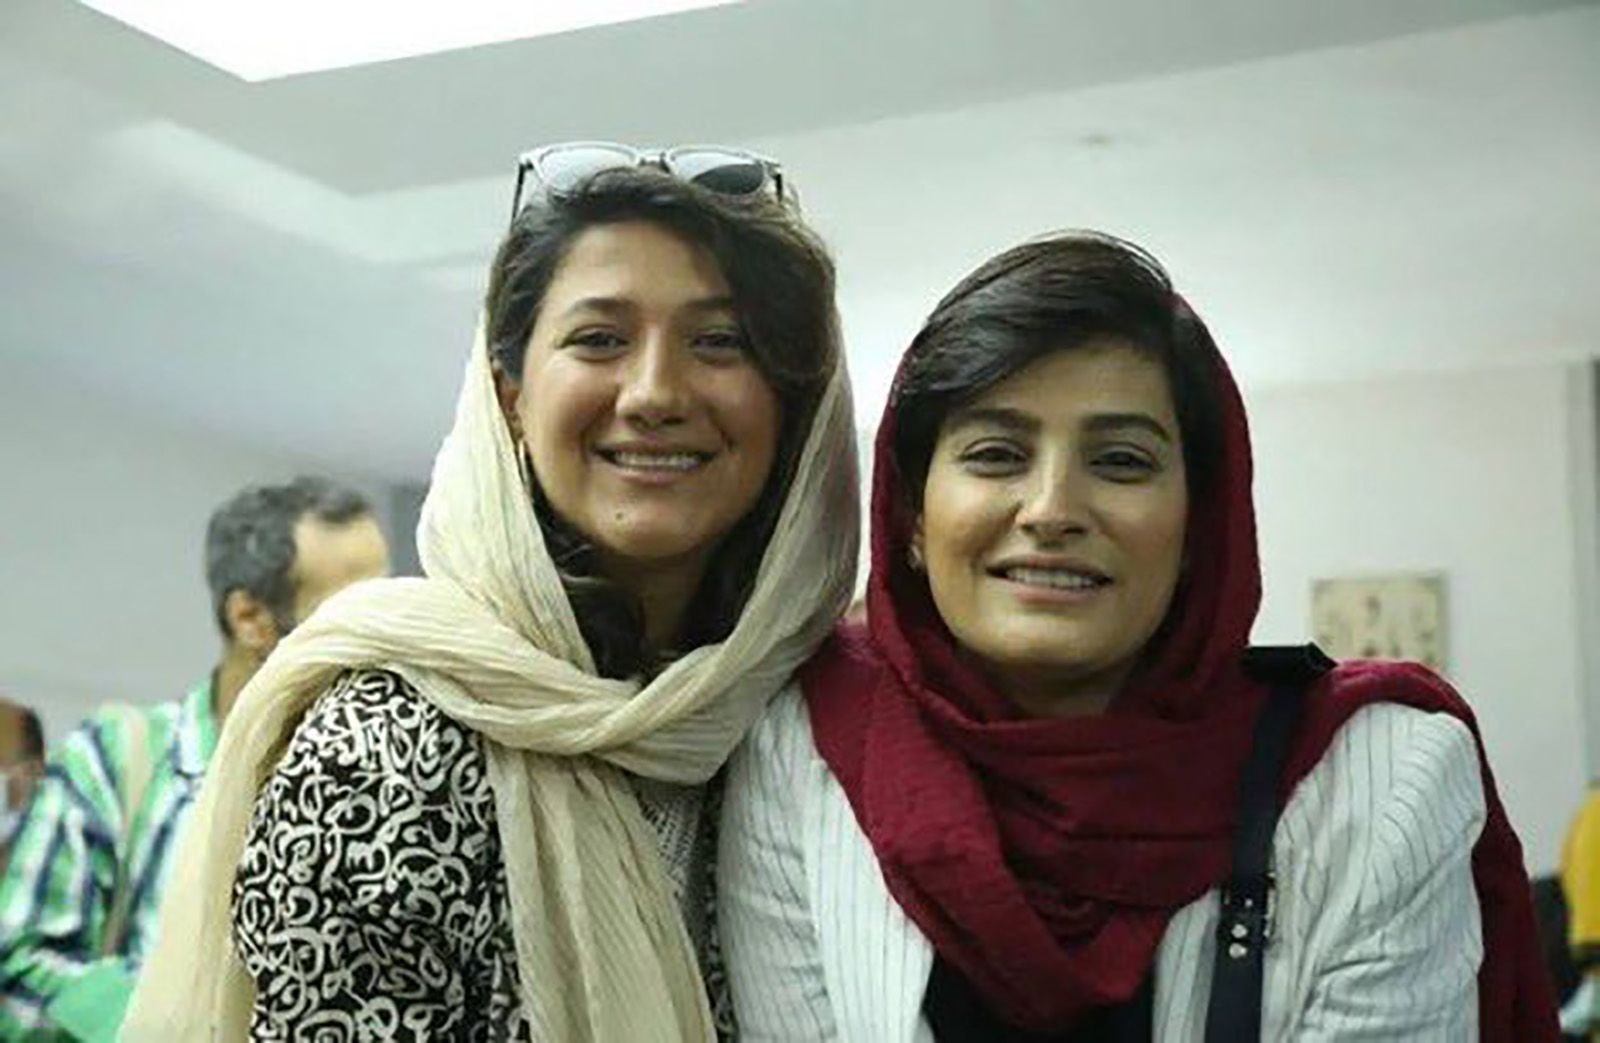 Iran, due giornaliste da oltre un mese in carcere